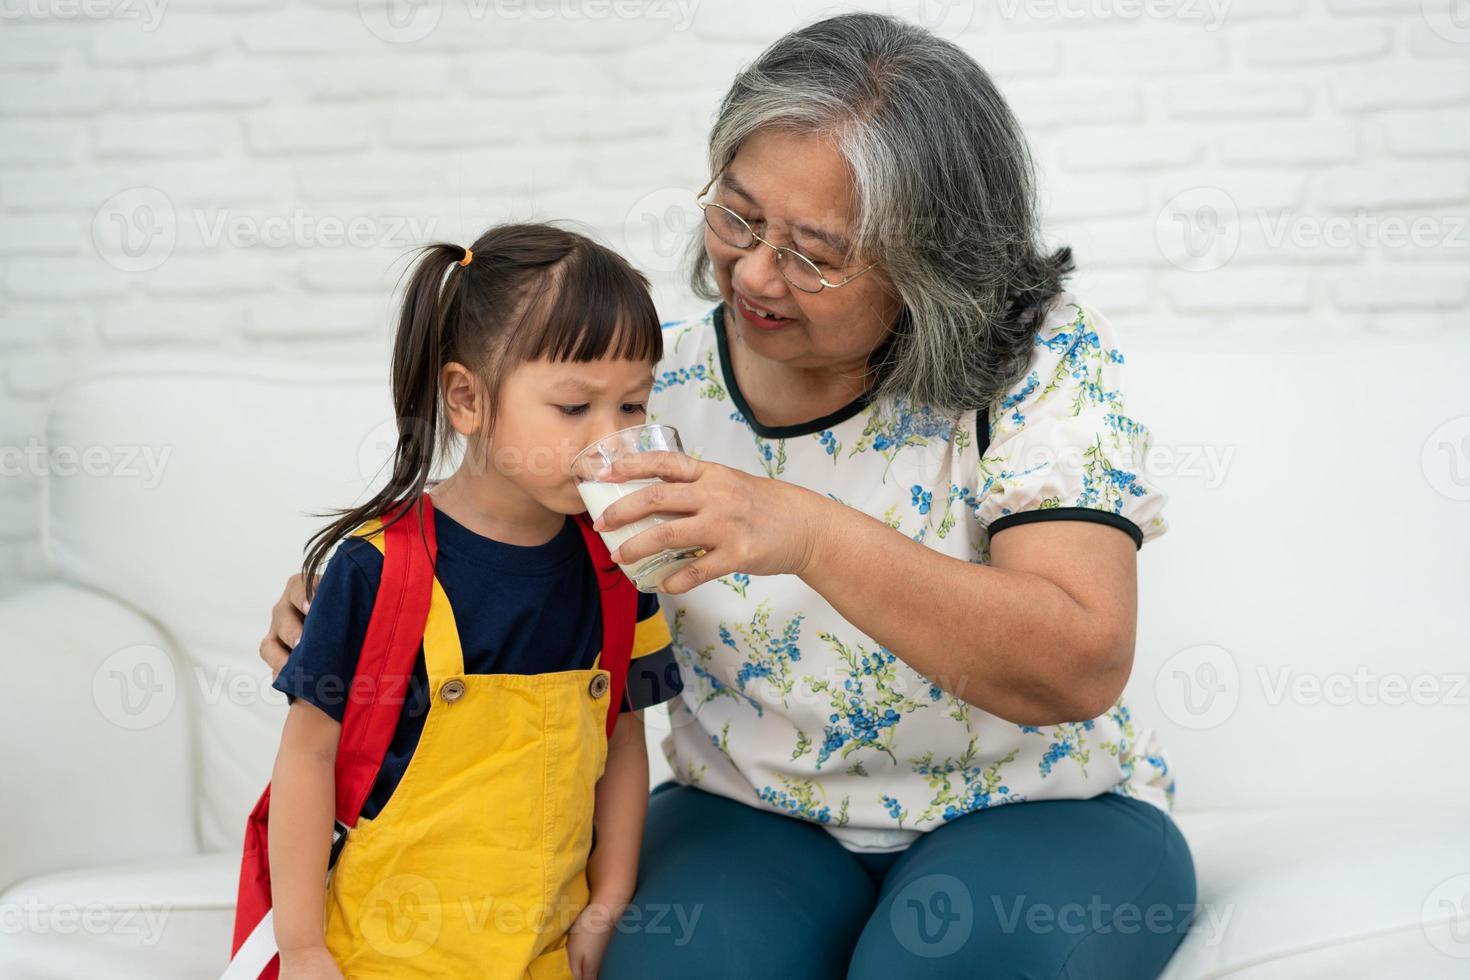 felice anziana nonna asiatica si siede accanto a sua nipote e nutre il latte fresco dal bicchiere per colazione a casa. concetto di una famiglia felice e si prende cura insieme, assistenza sanitaria in età prescolare foto